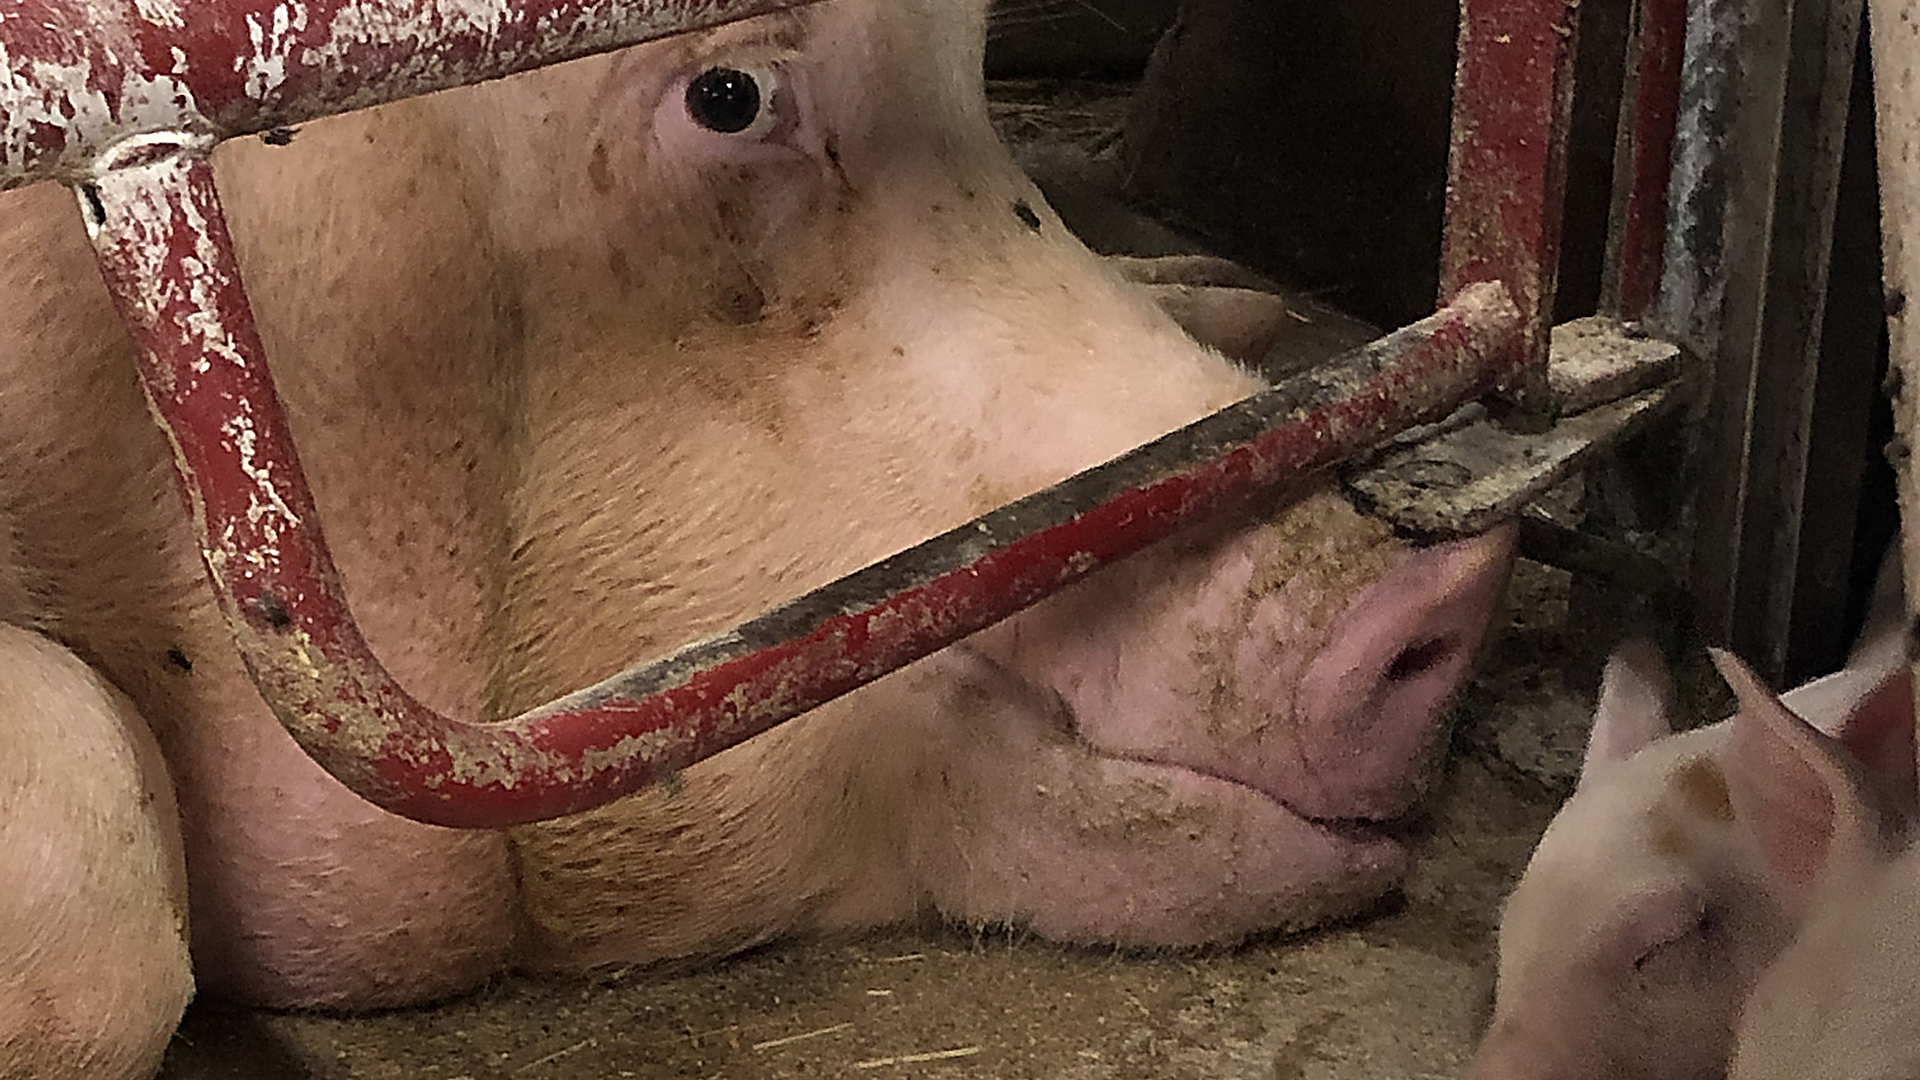 So i farebøjle foran pattegris. Billede taget i dansk grisestald under 'Åbent landbrug'